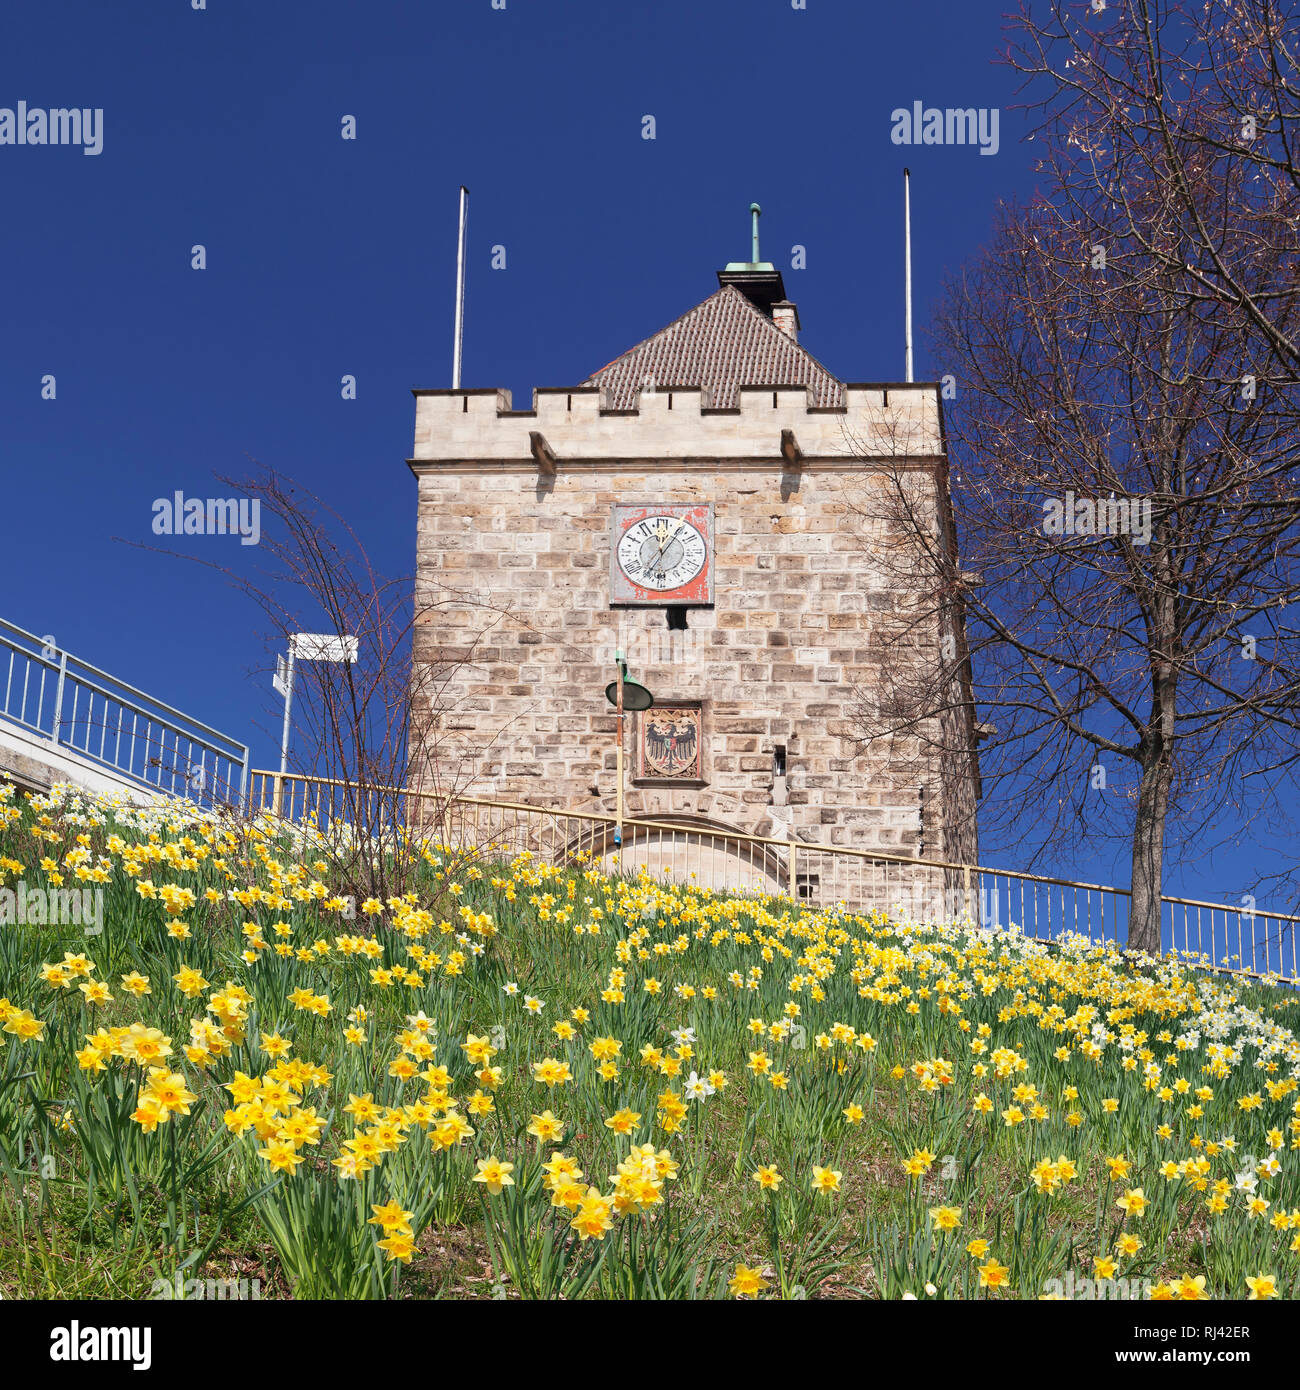 Blumenwiese mit Narzissen am Pliensauturm, Esslingen am Neckar, Baden-Württemberg, Deutschland Foto Stock